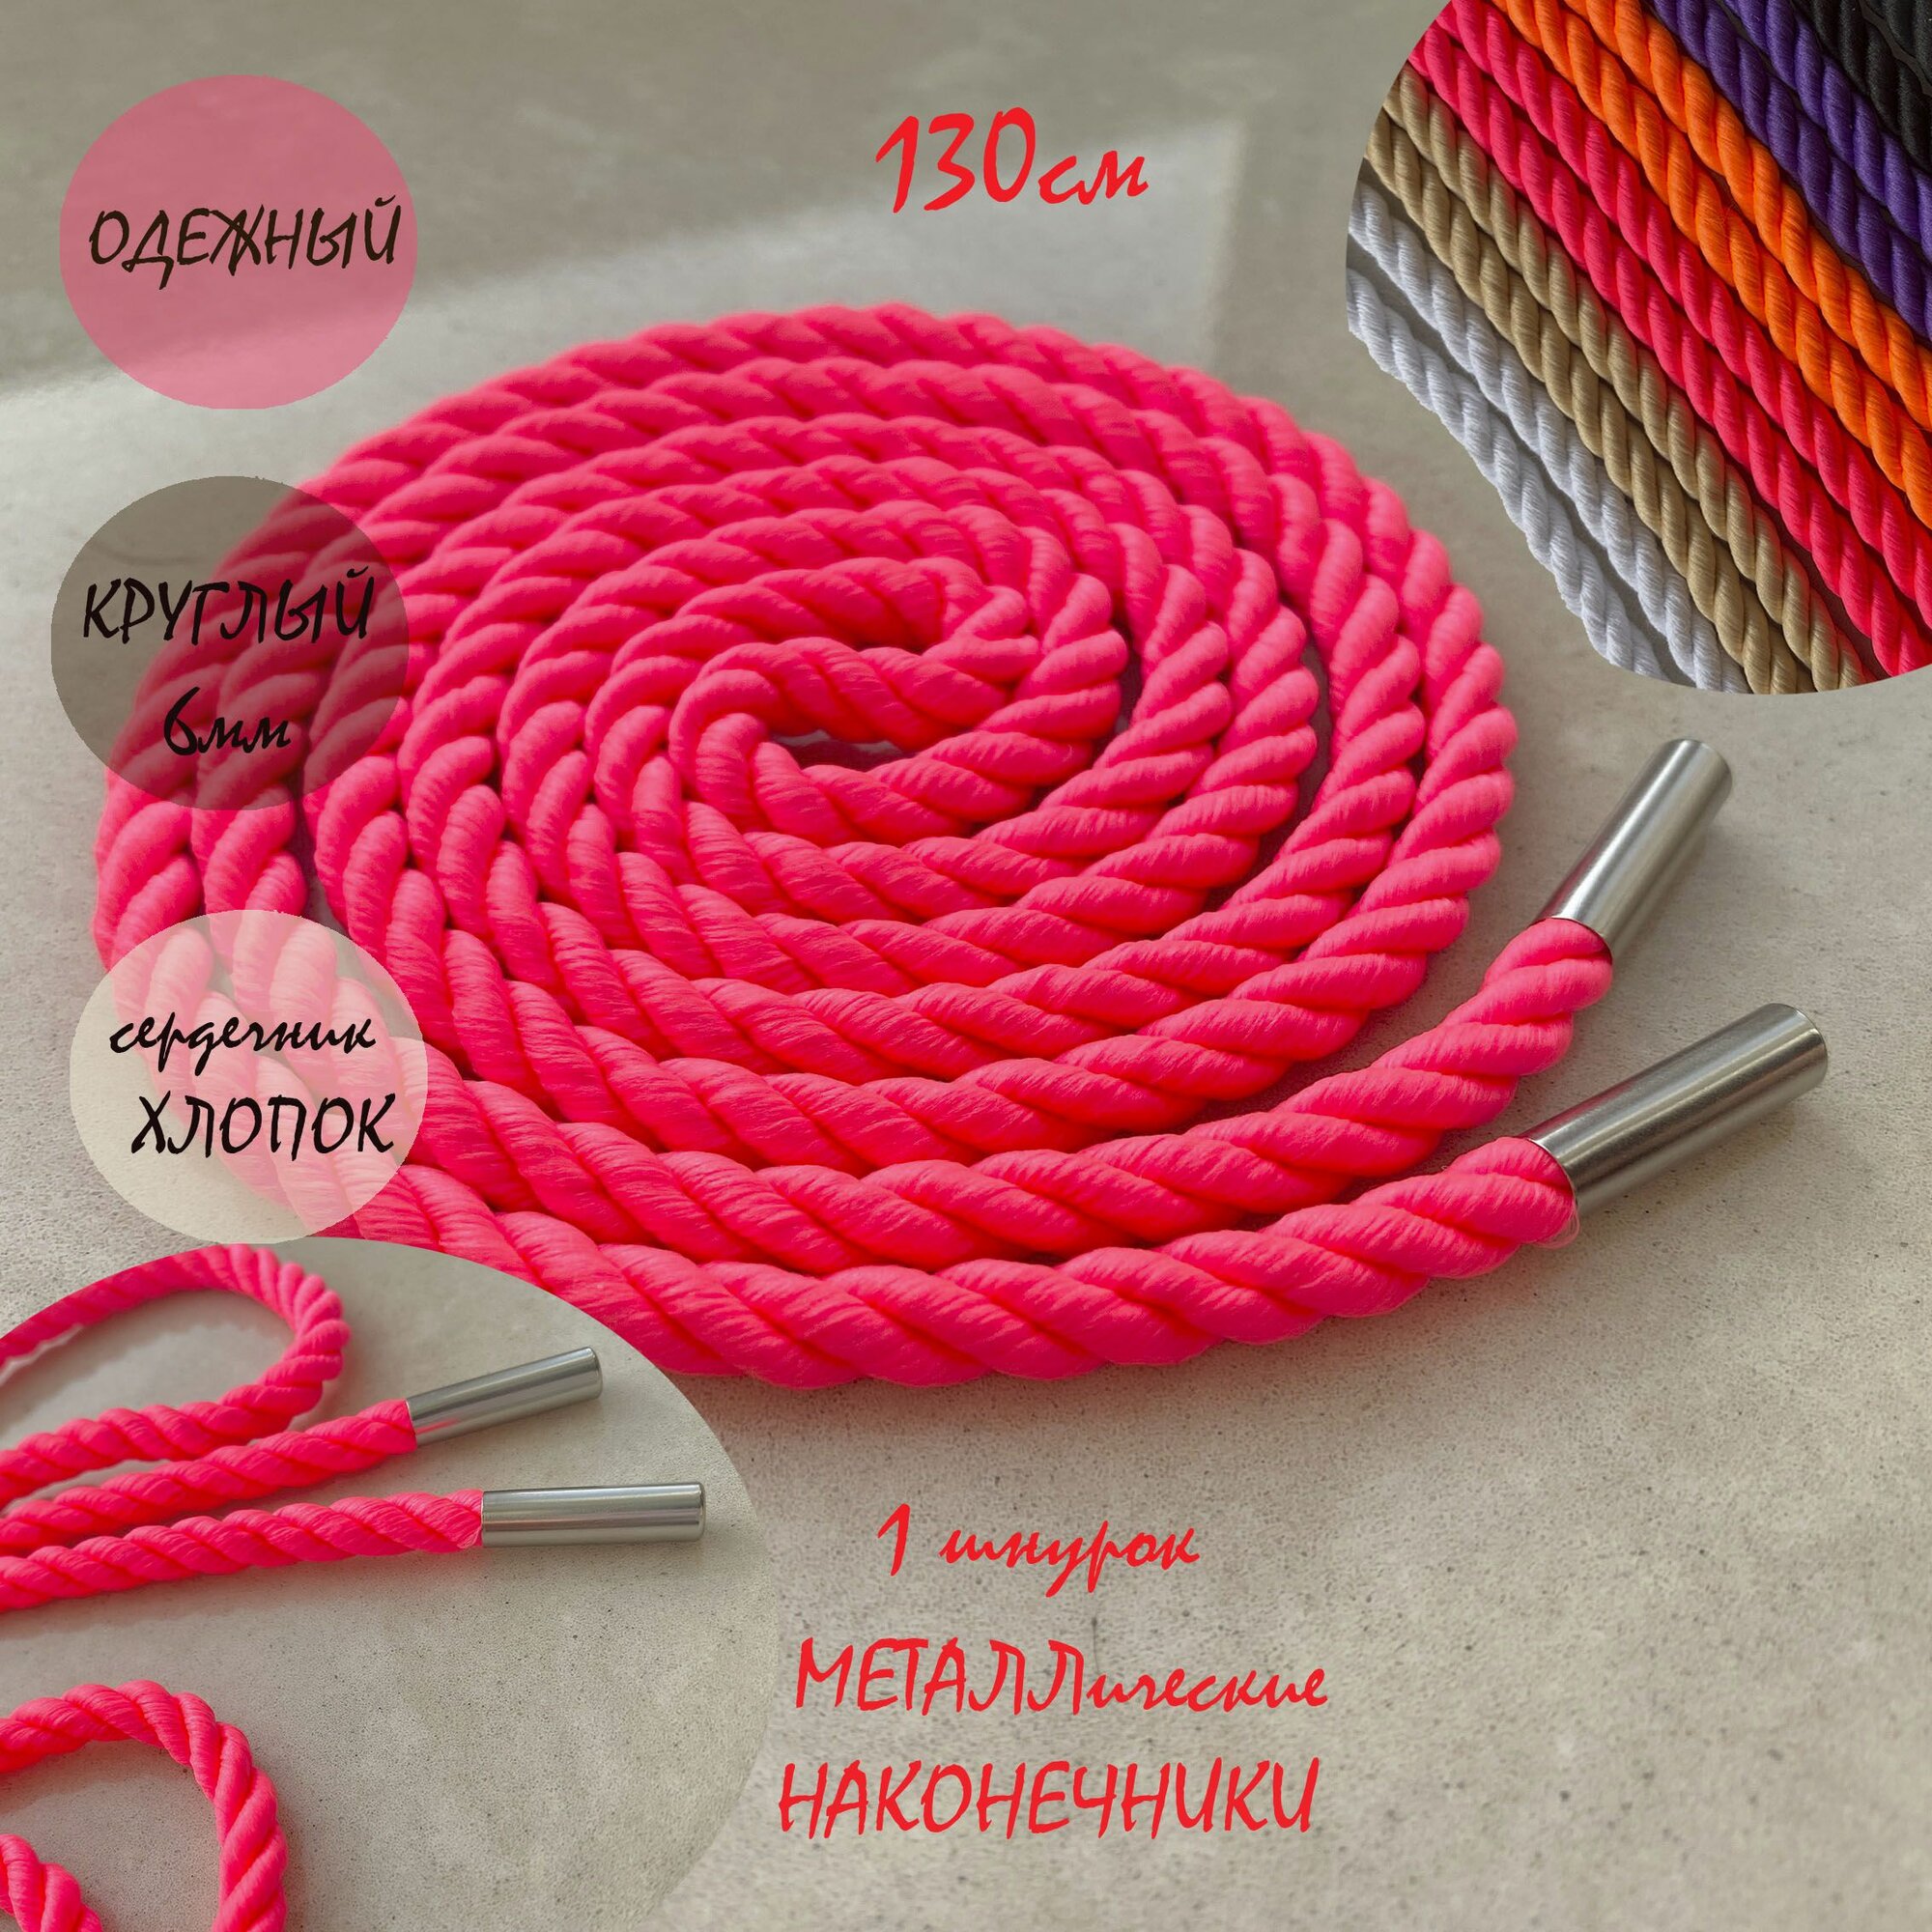 Шнур одежный 130см розовый неон 6мм веревка с металл наконечниками (1 штука) для одежды / худи / капюшона